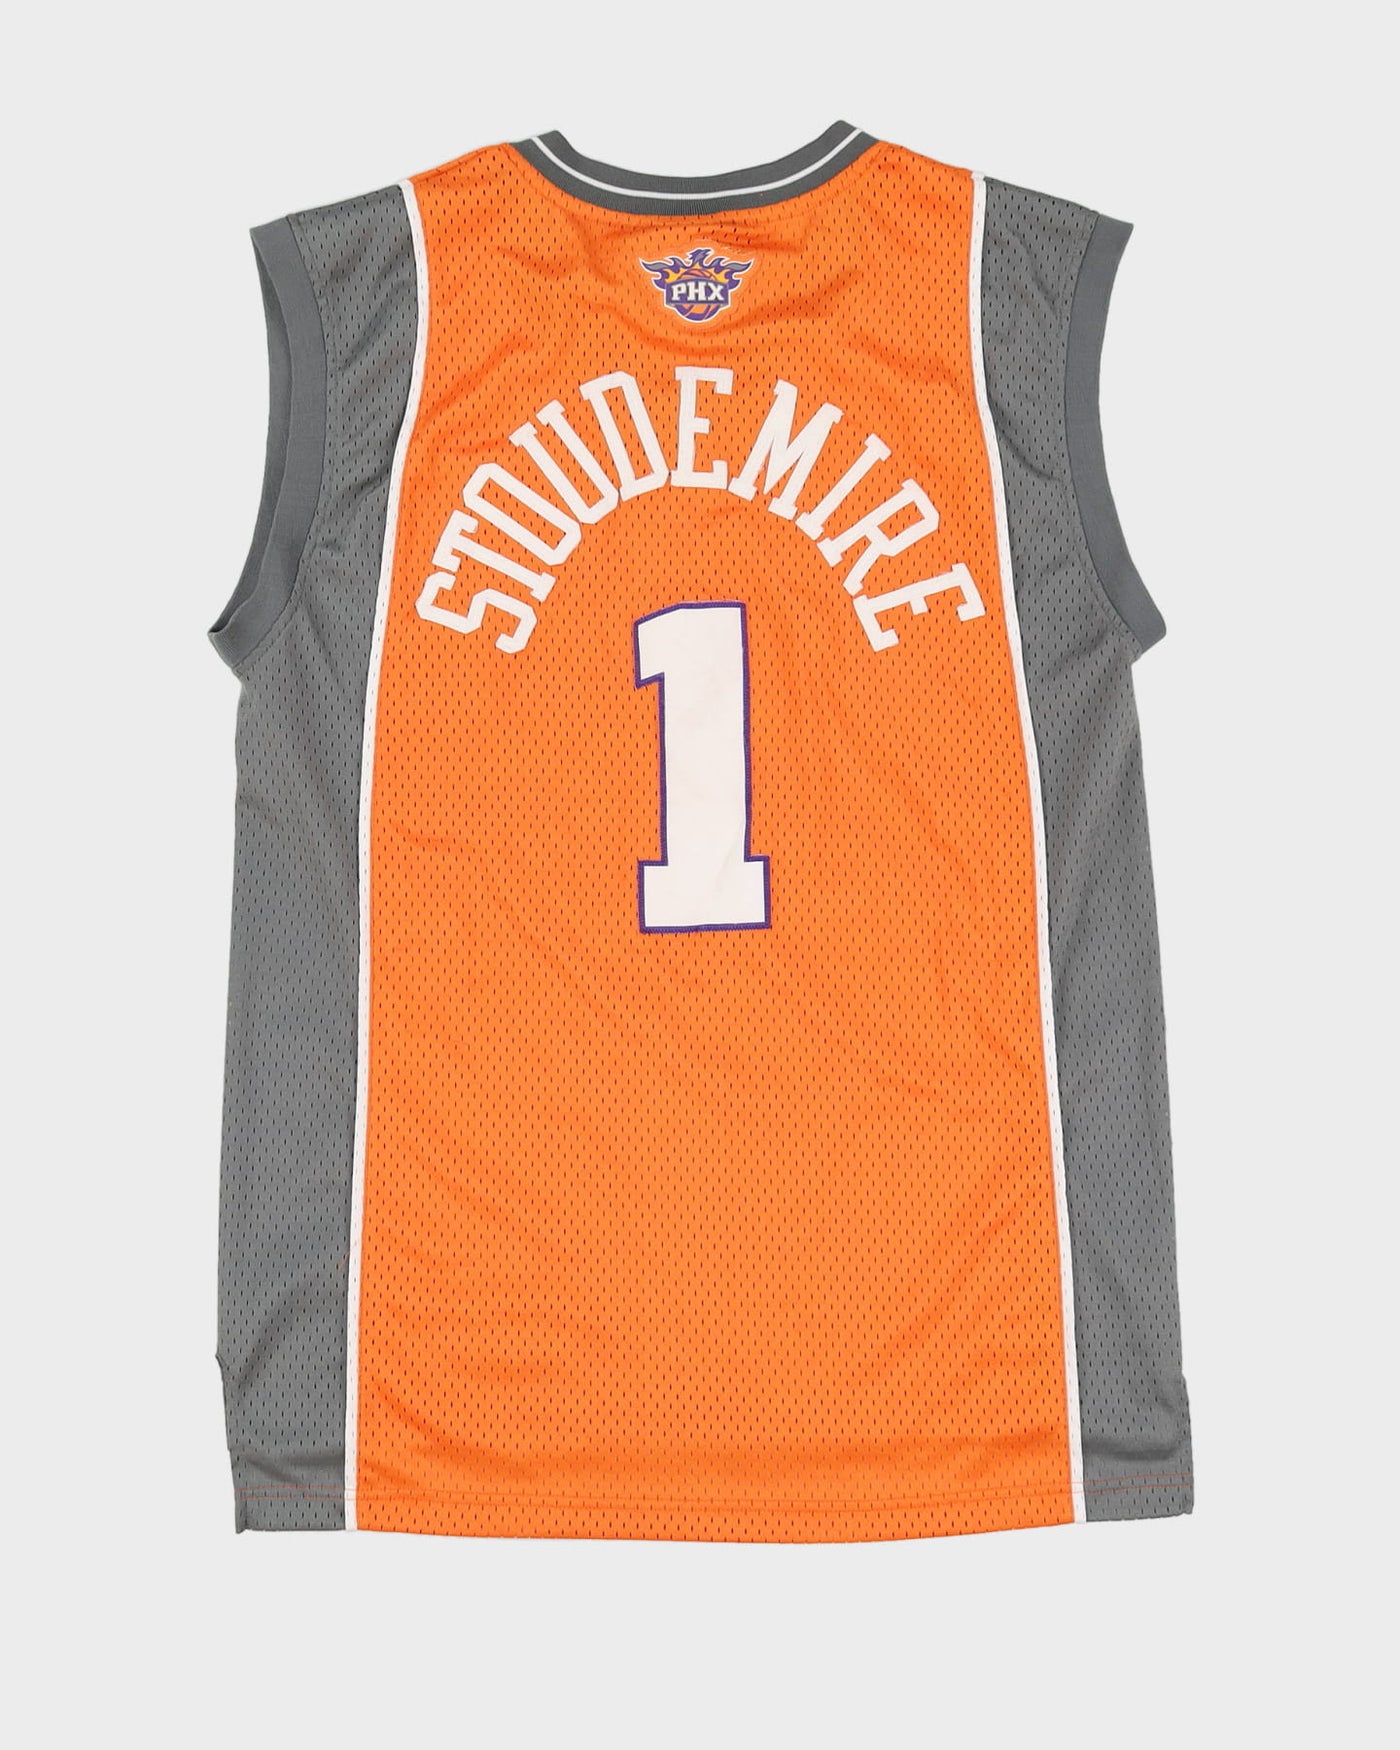 00s Amar'e Stoudemire #1 Phoenix Suns Stitched Orange / Grey NBA Basketball Jersey - M